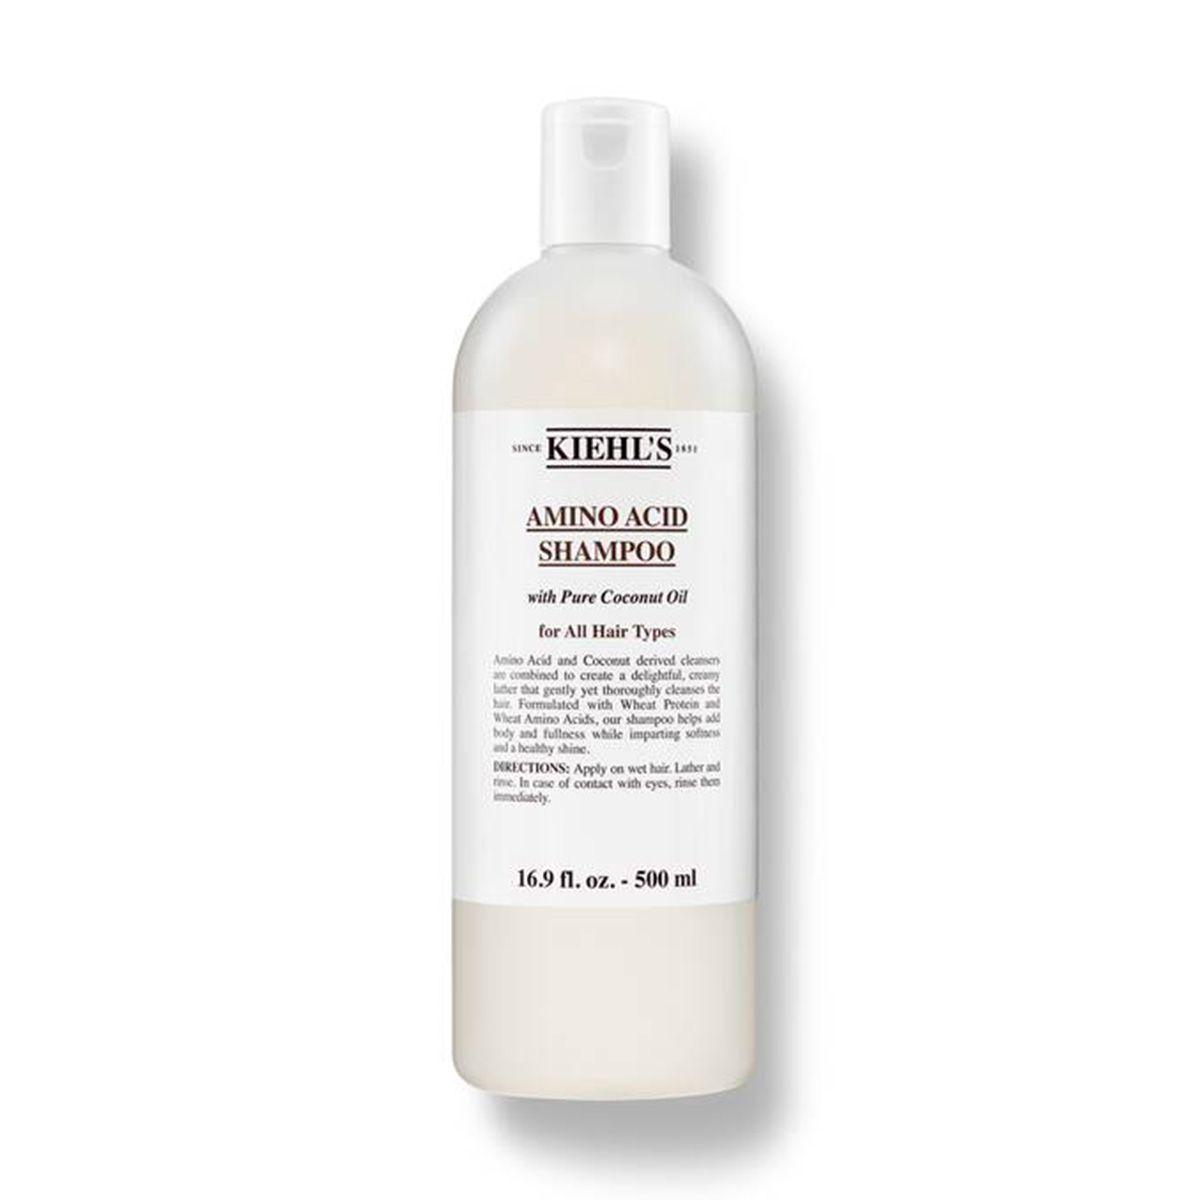 Amino Acid Shampoo, de Kiehl's